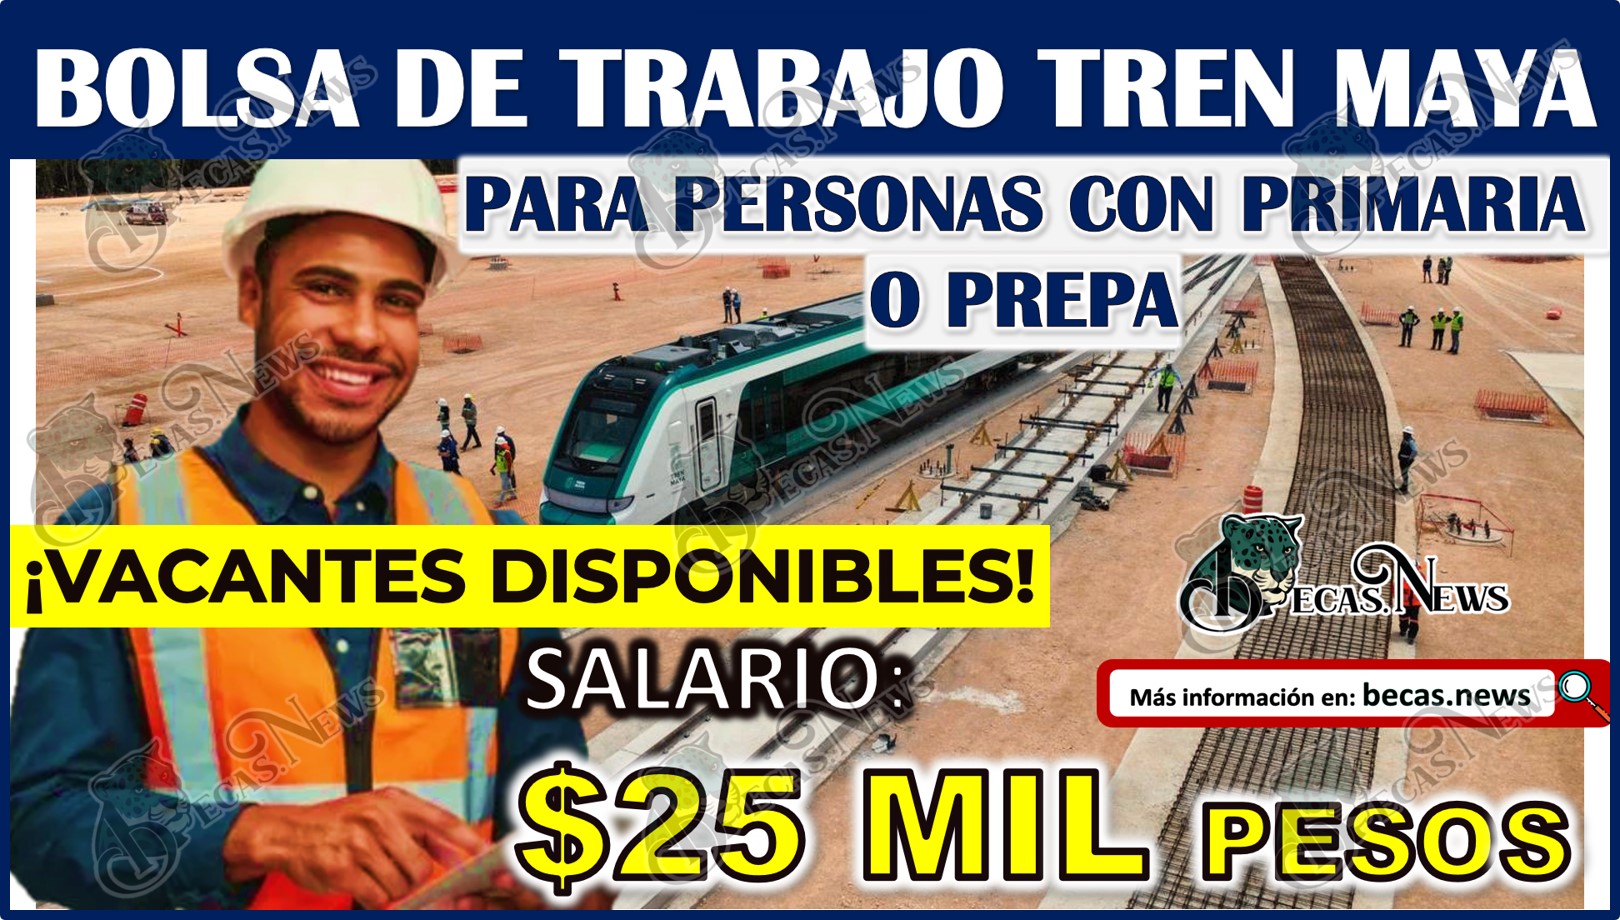 Bolsa de Trabajo Tren Maya para personas con PRIMARIA o PREPA | ¡Vacantes disponibles con sueldos de $25 mil pesos mensuales!